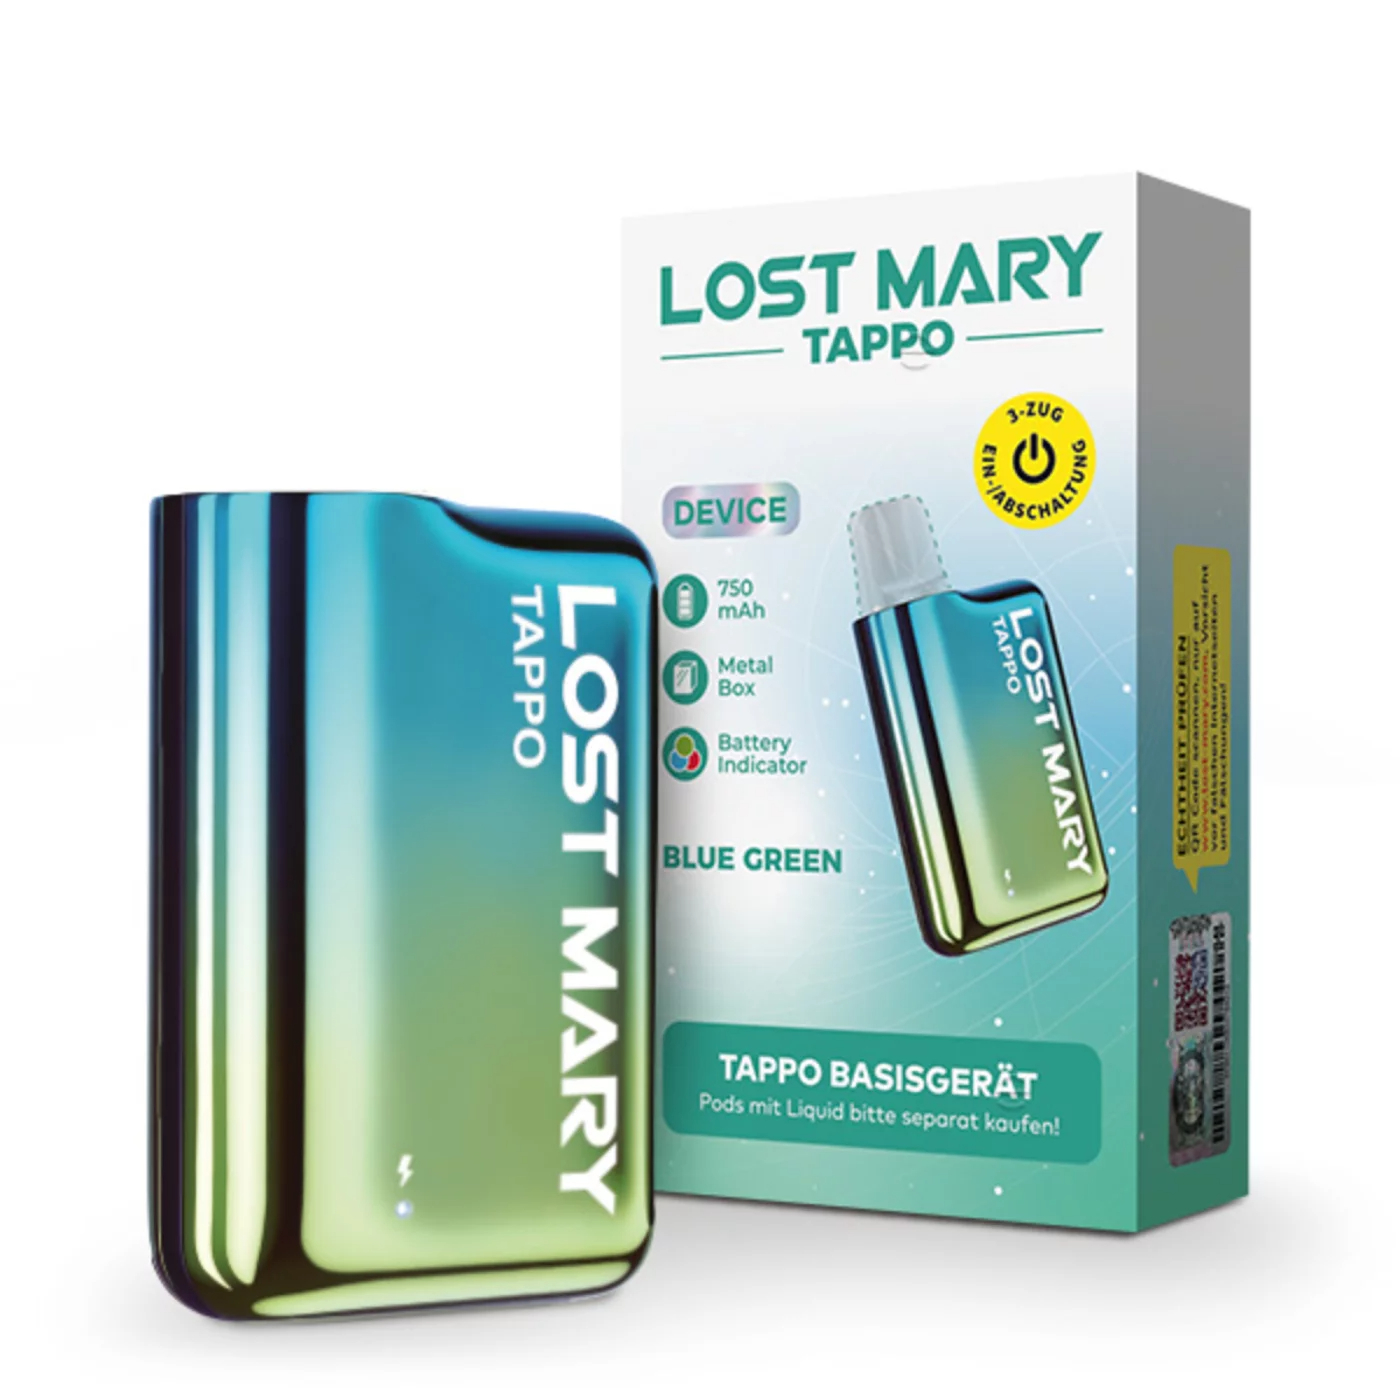 Lost Mary Tappo Pod System - Basisgerät Blue Green